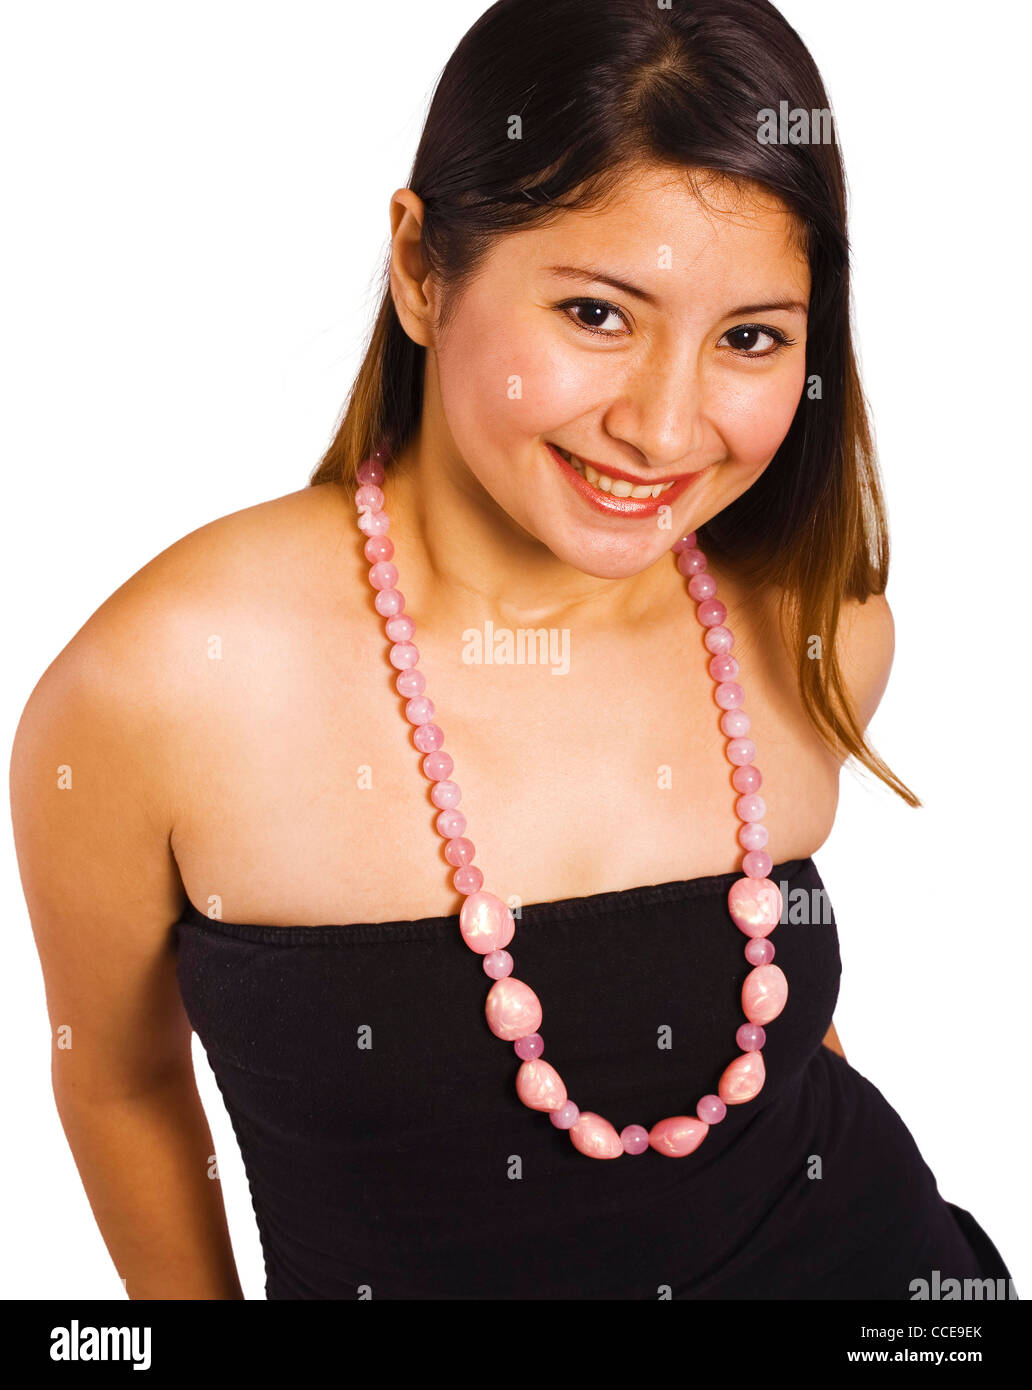 Schöne junge Dame im trägerlosen Kleid lächelnd in die Kamera Stockfoto